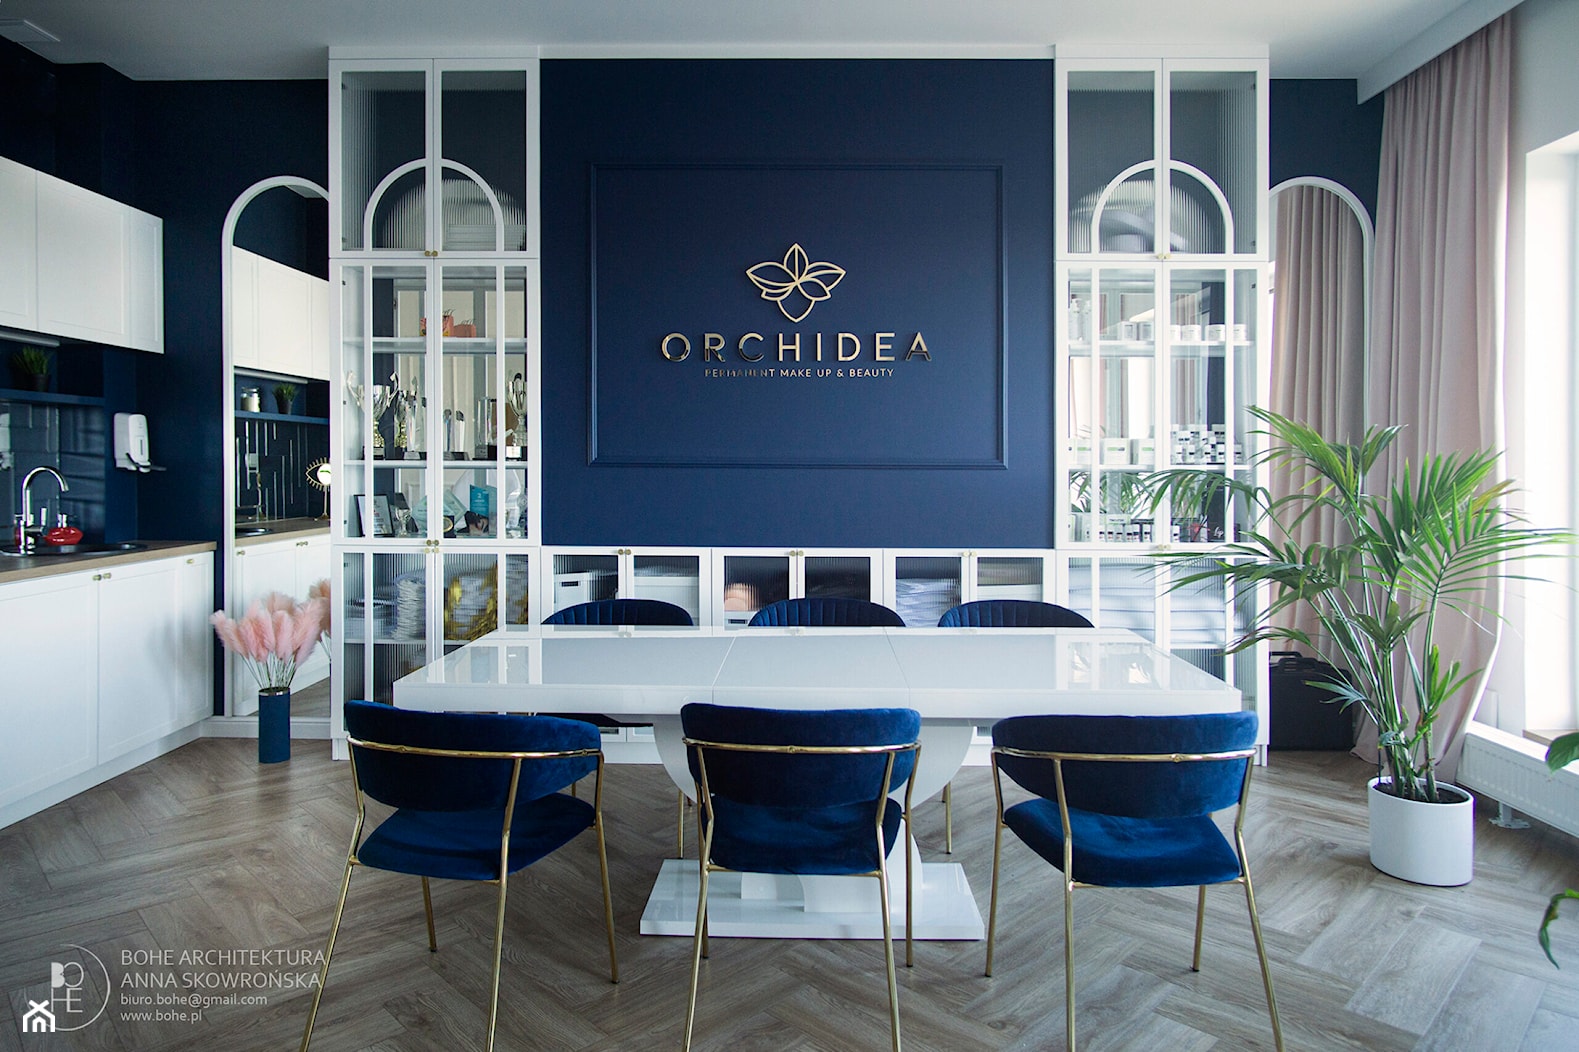 Realizacja projektu salonu kosmetycznego Orchidea - zdjęcie od BOHE Architektura - Homebook